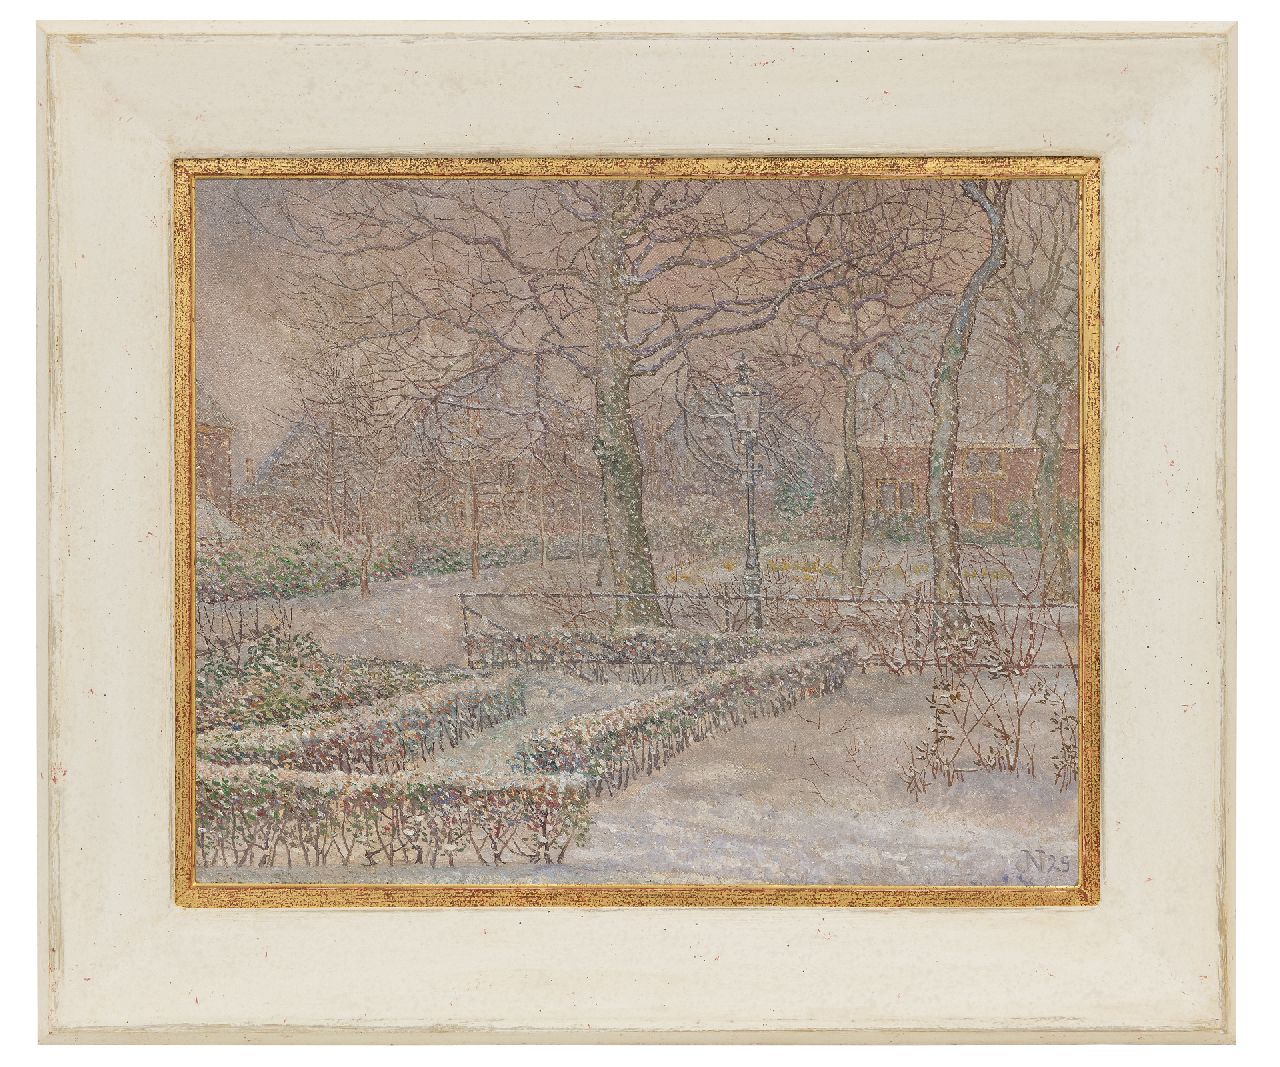 Nieweg J.  | Jakob Nieweg | Schilderijen te koop aangeboden | Tuin van de schilder in de sneeuw, Amersfoort, olieverf op doek 40,5 x 50,5 cm, gesigneerd rechtsonder met initiaal en gedateerd '29